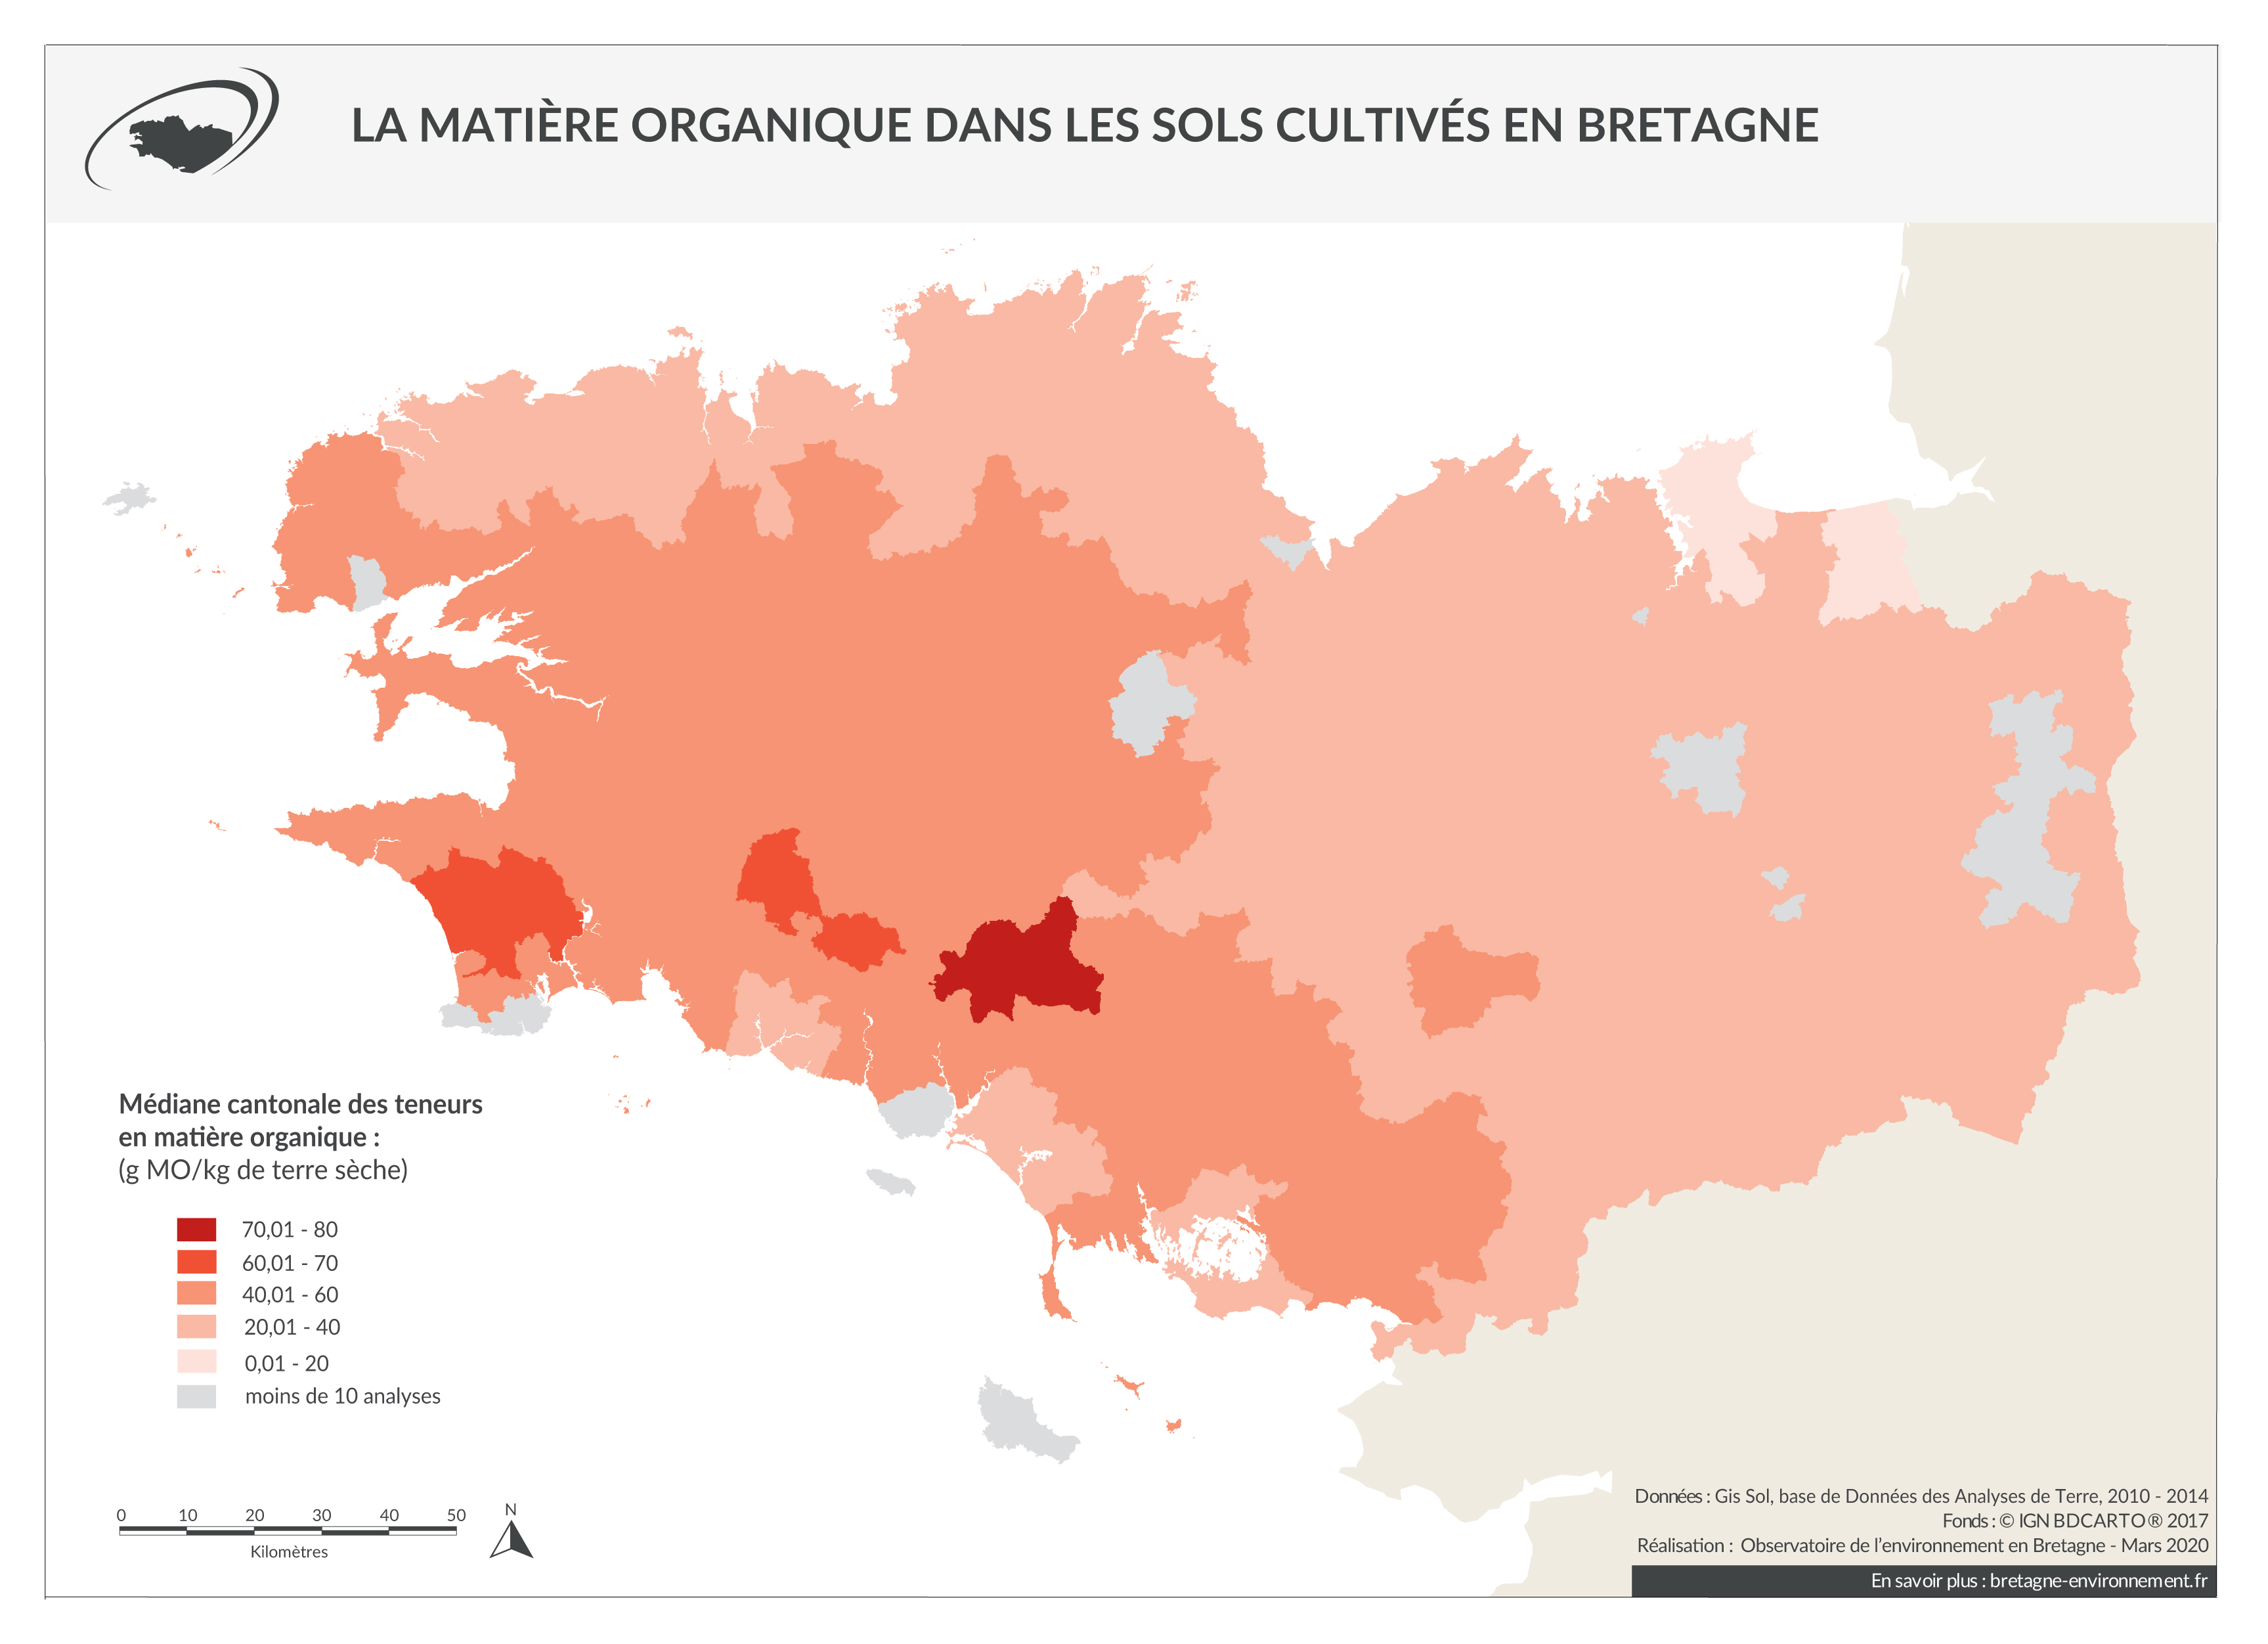 La matière organique dans les sols cultivés bretons de 2010 à 2014